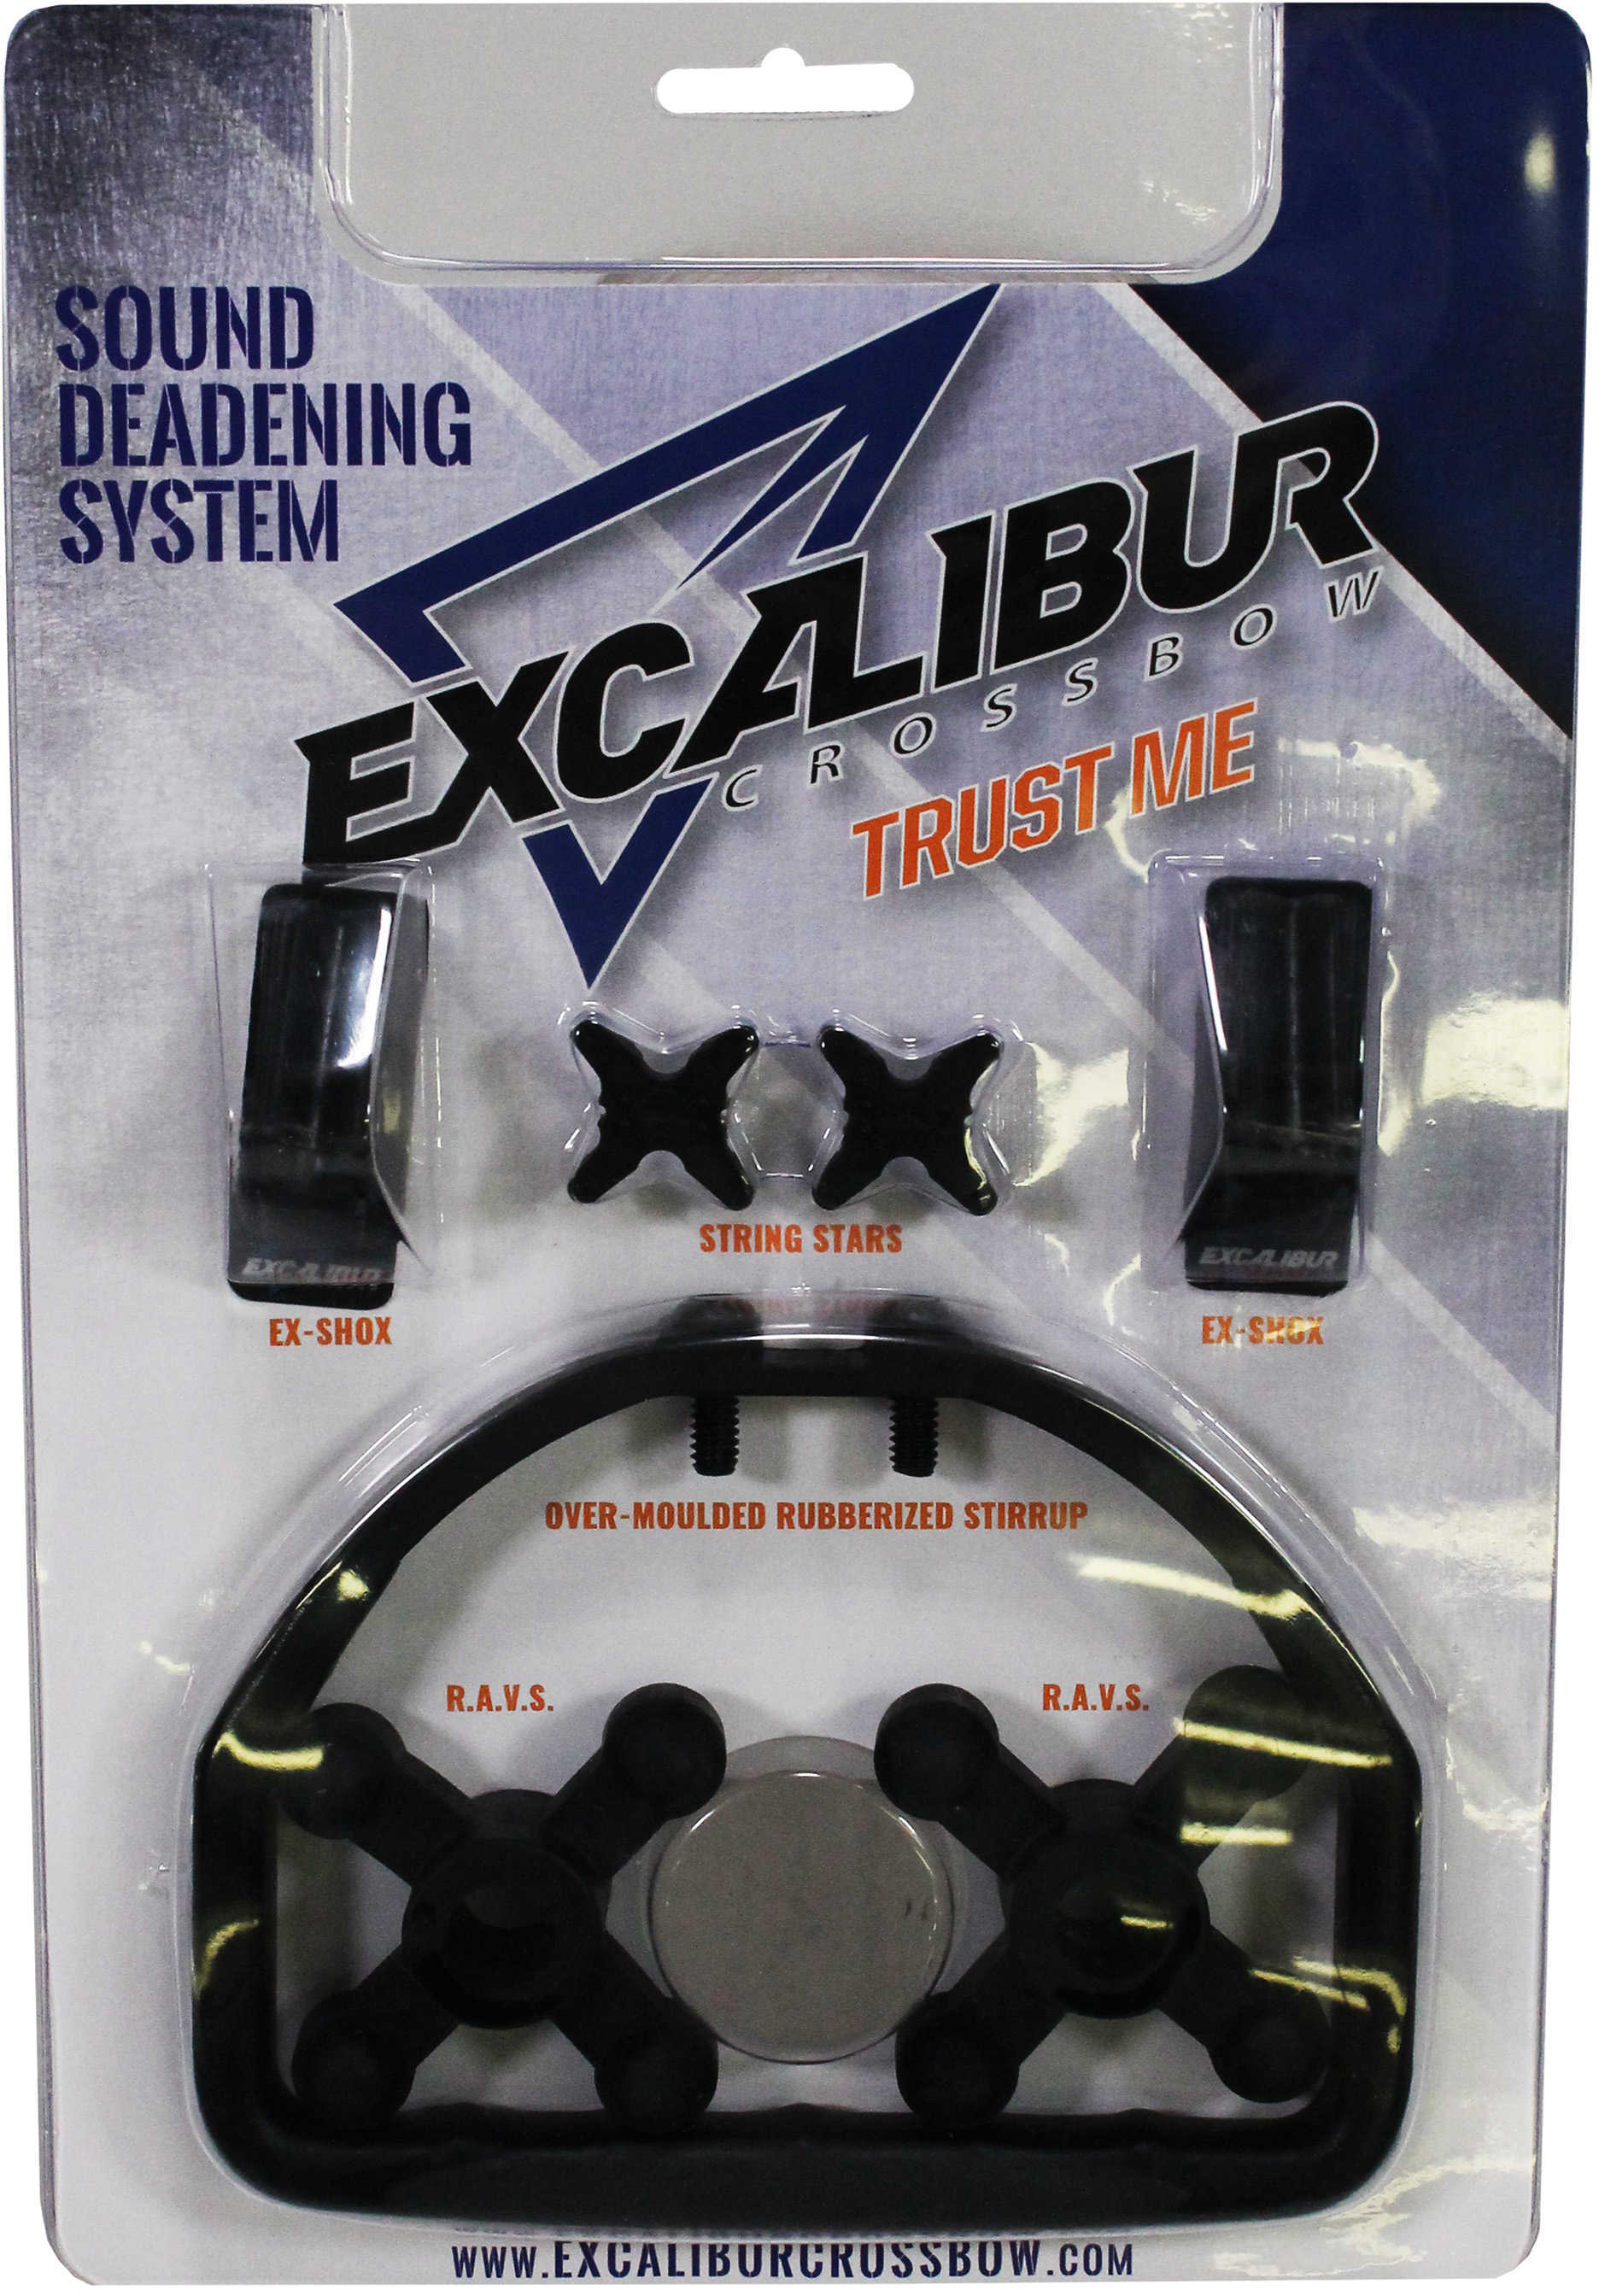 Excalibur Sound Deadening System Model: 95913